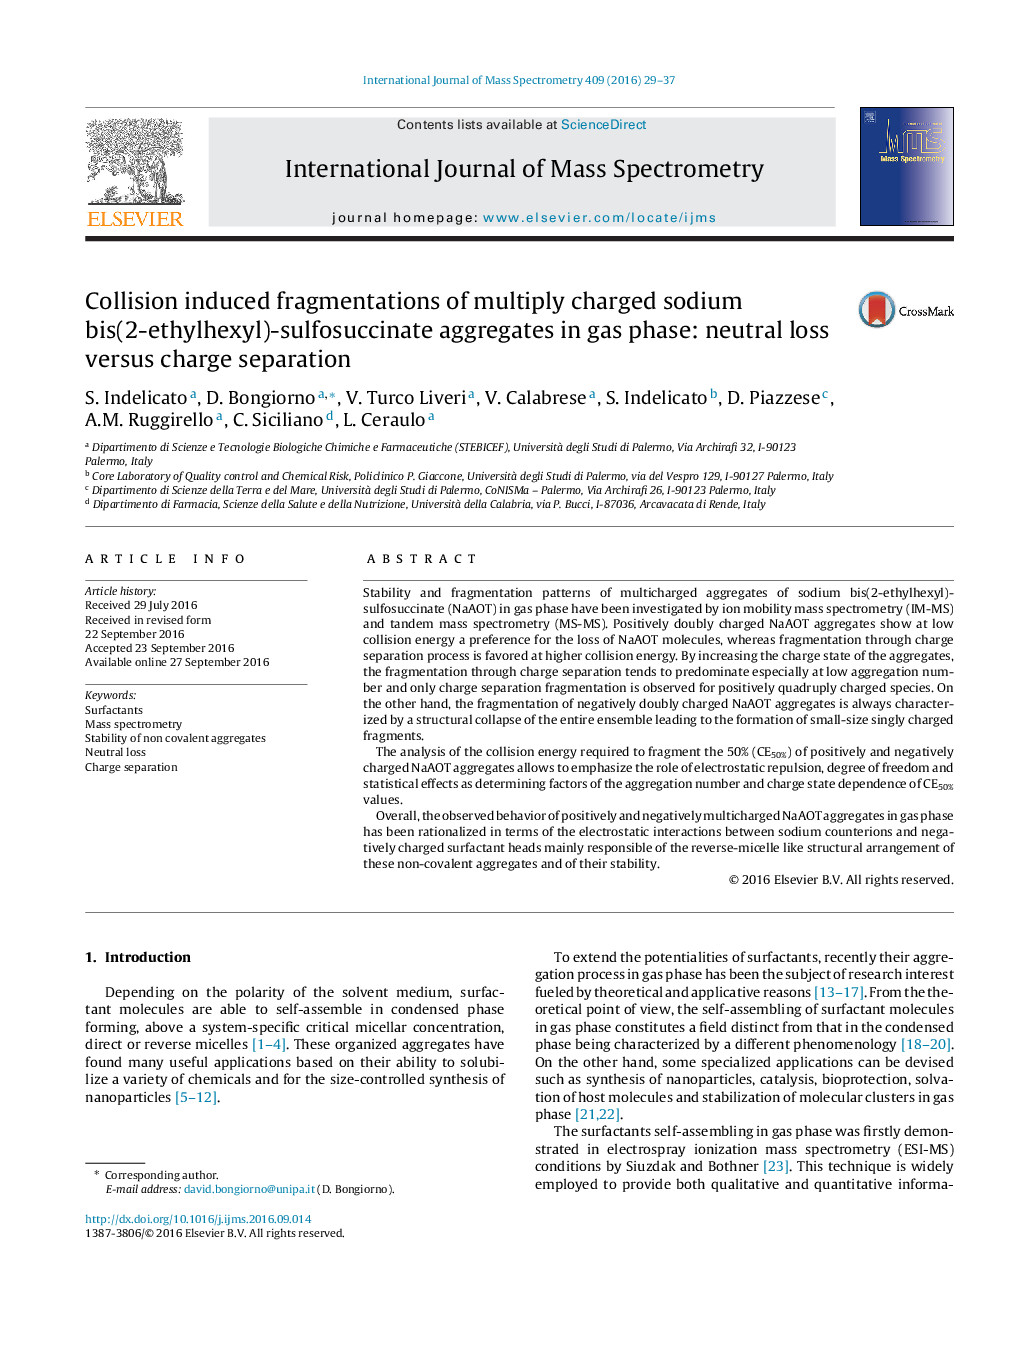 تقارن ناشی از برخورد ناشی از سولفات سدیم بیست (2-اتیل هگزیل) -سوفلوسوکتینات در فاز گاز: کاهش خنثی و جداسازی شارژ 